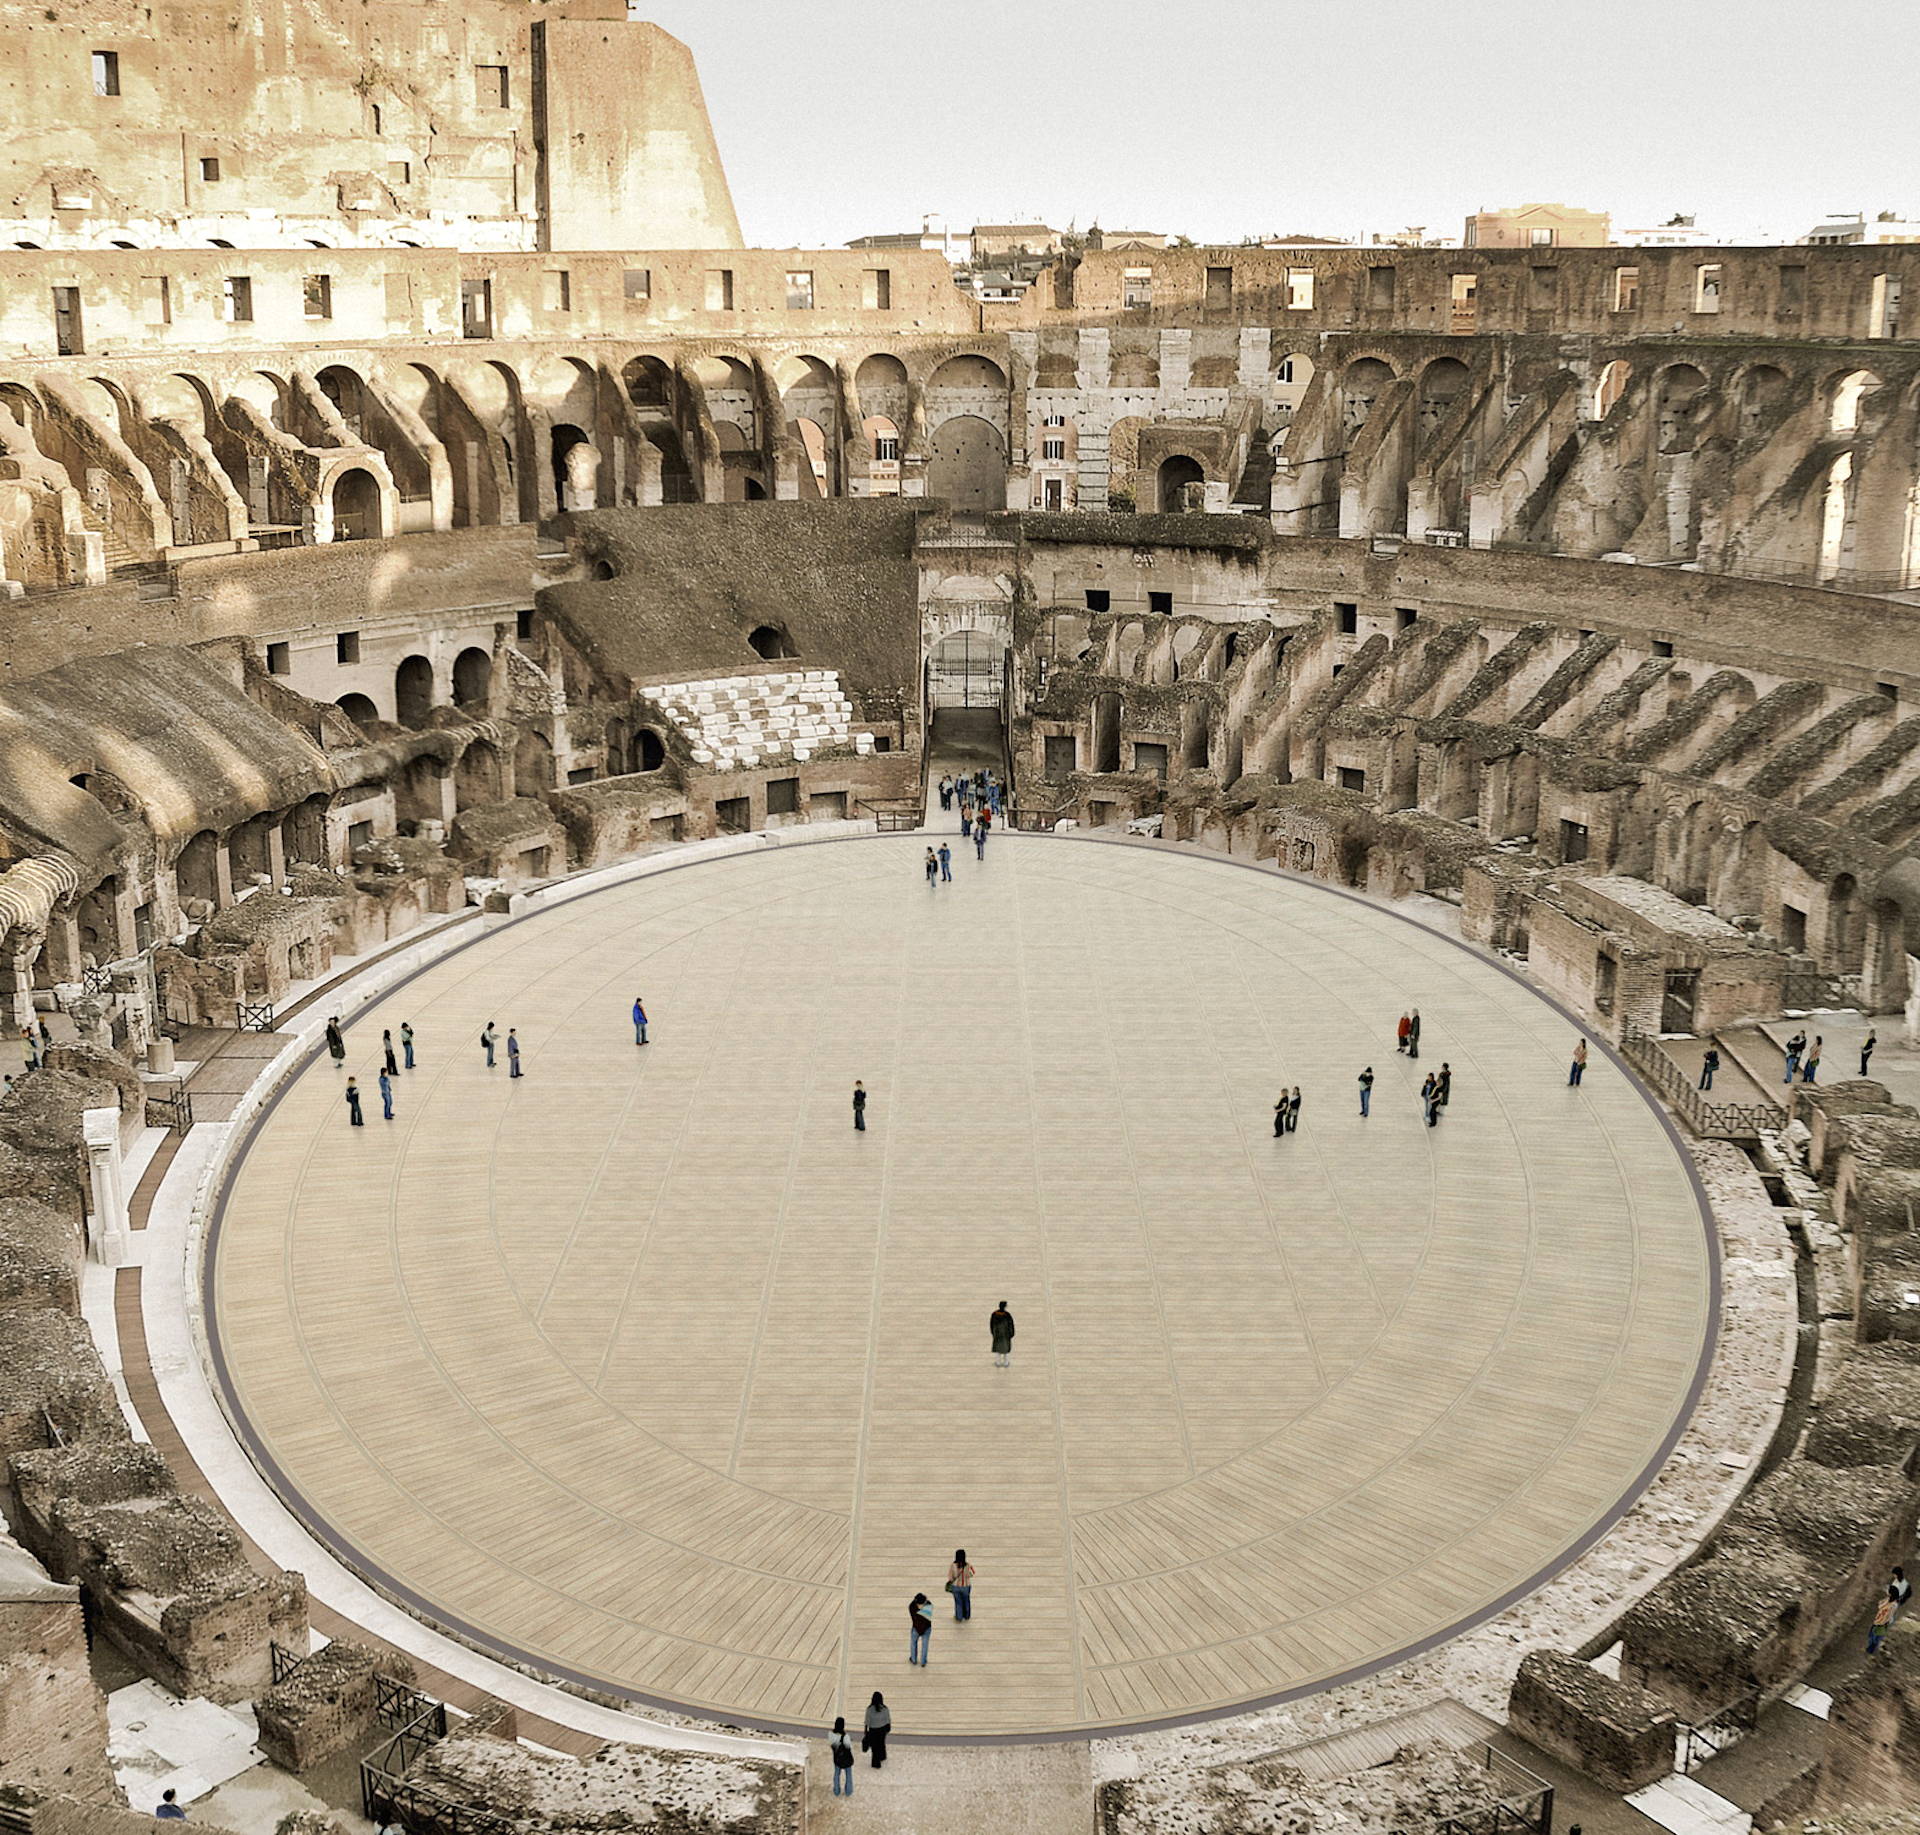 Remodelarán el Coliseo de Roma para tener un suelo móvil: video